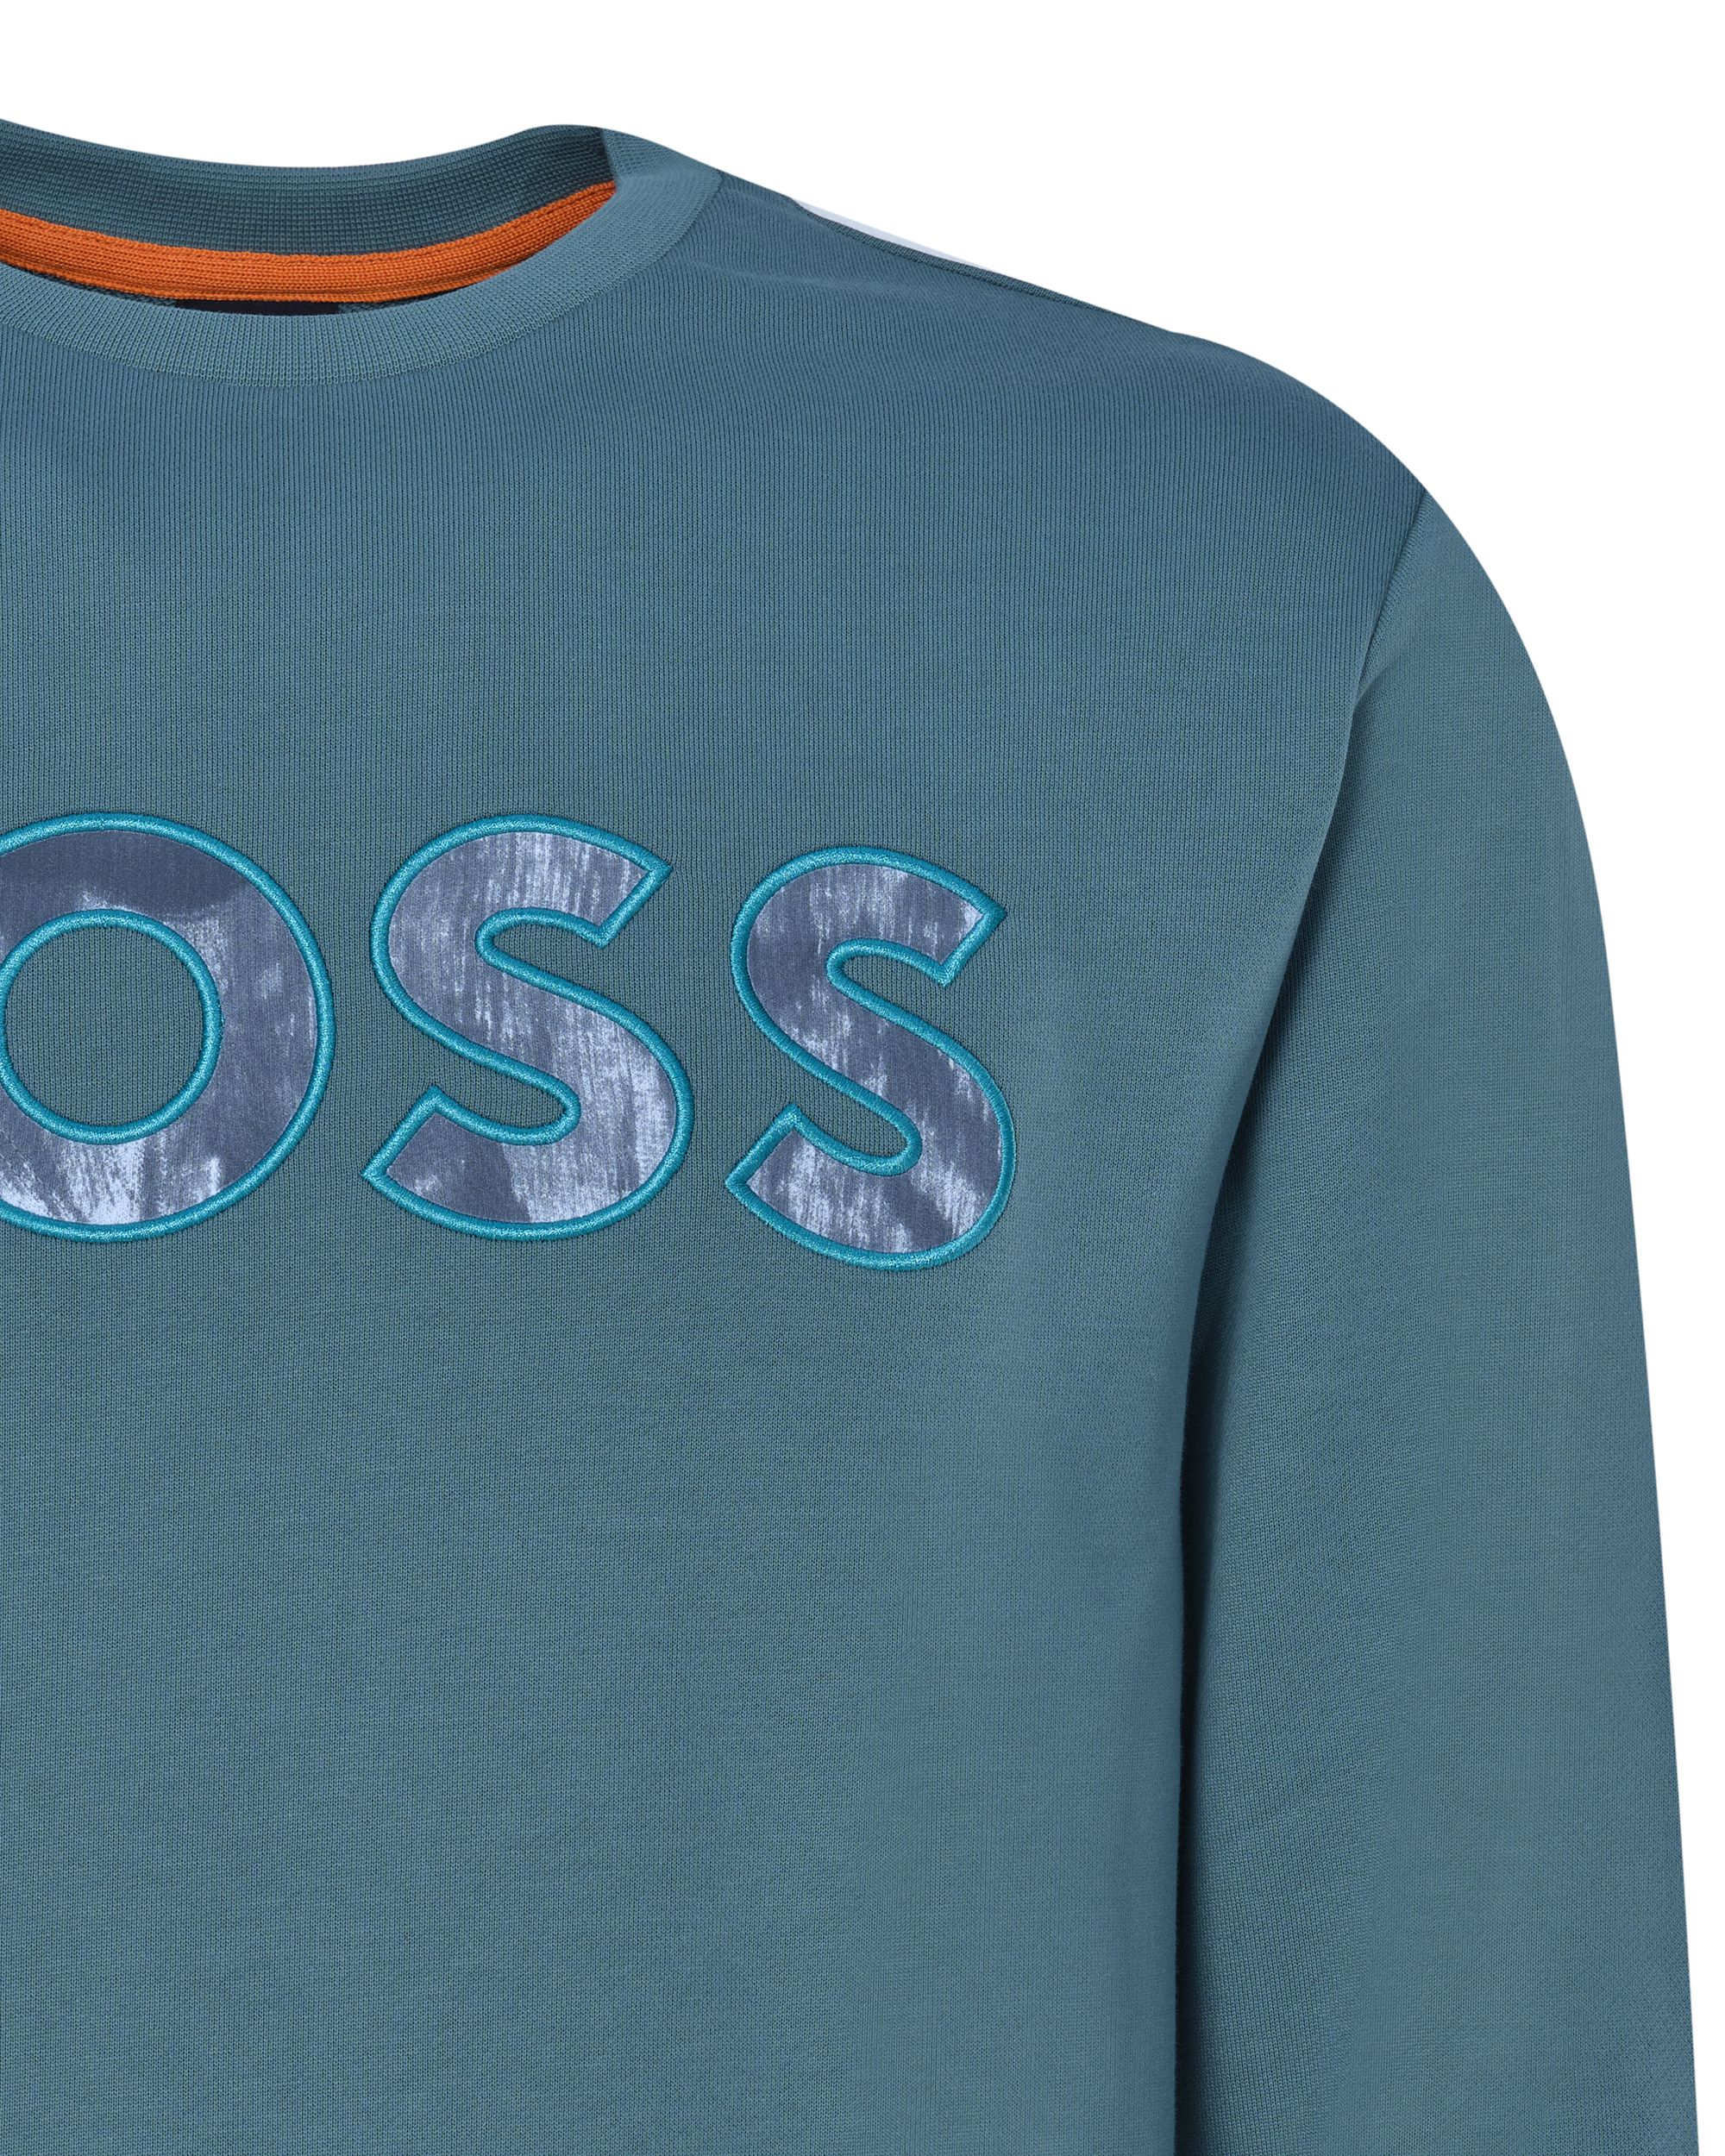 Hugo Boss Menswear Sweater Groen 082287-001-L